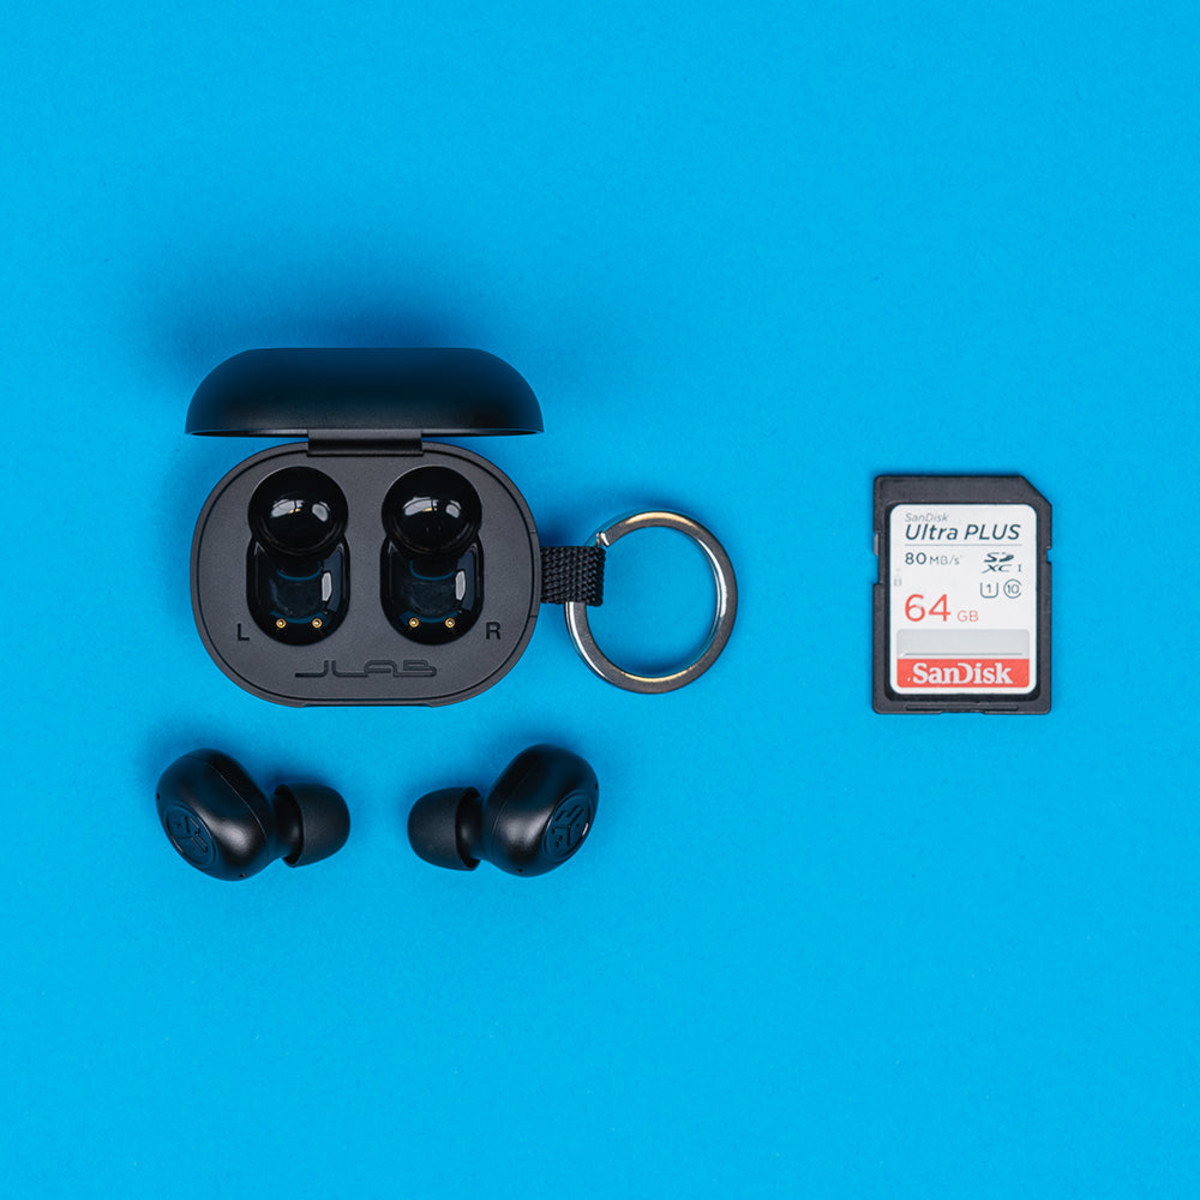 JBuds Mini True Wireless Earbuds- Black